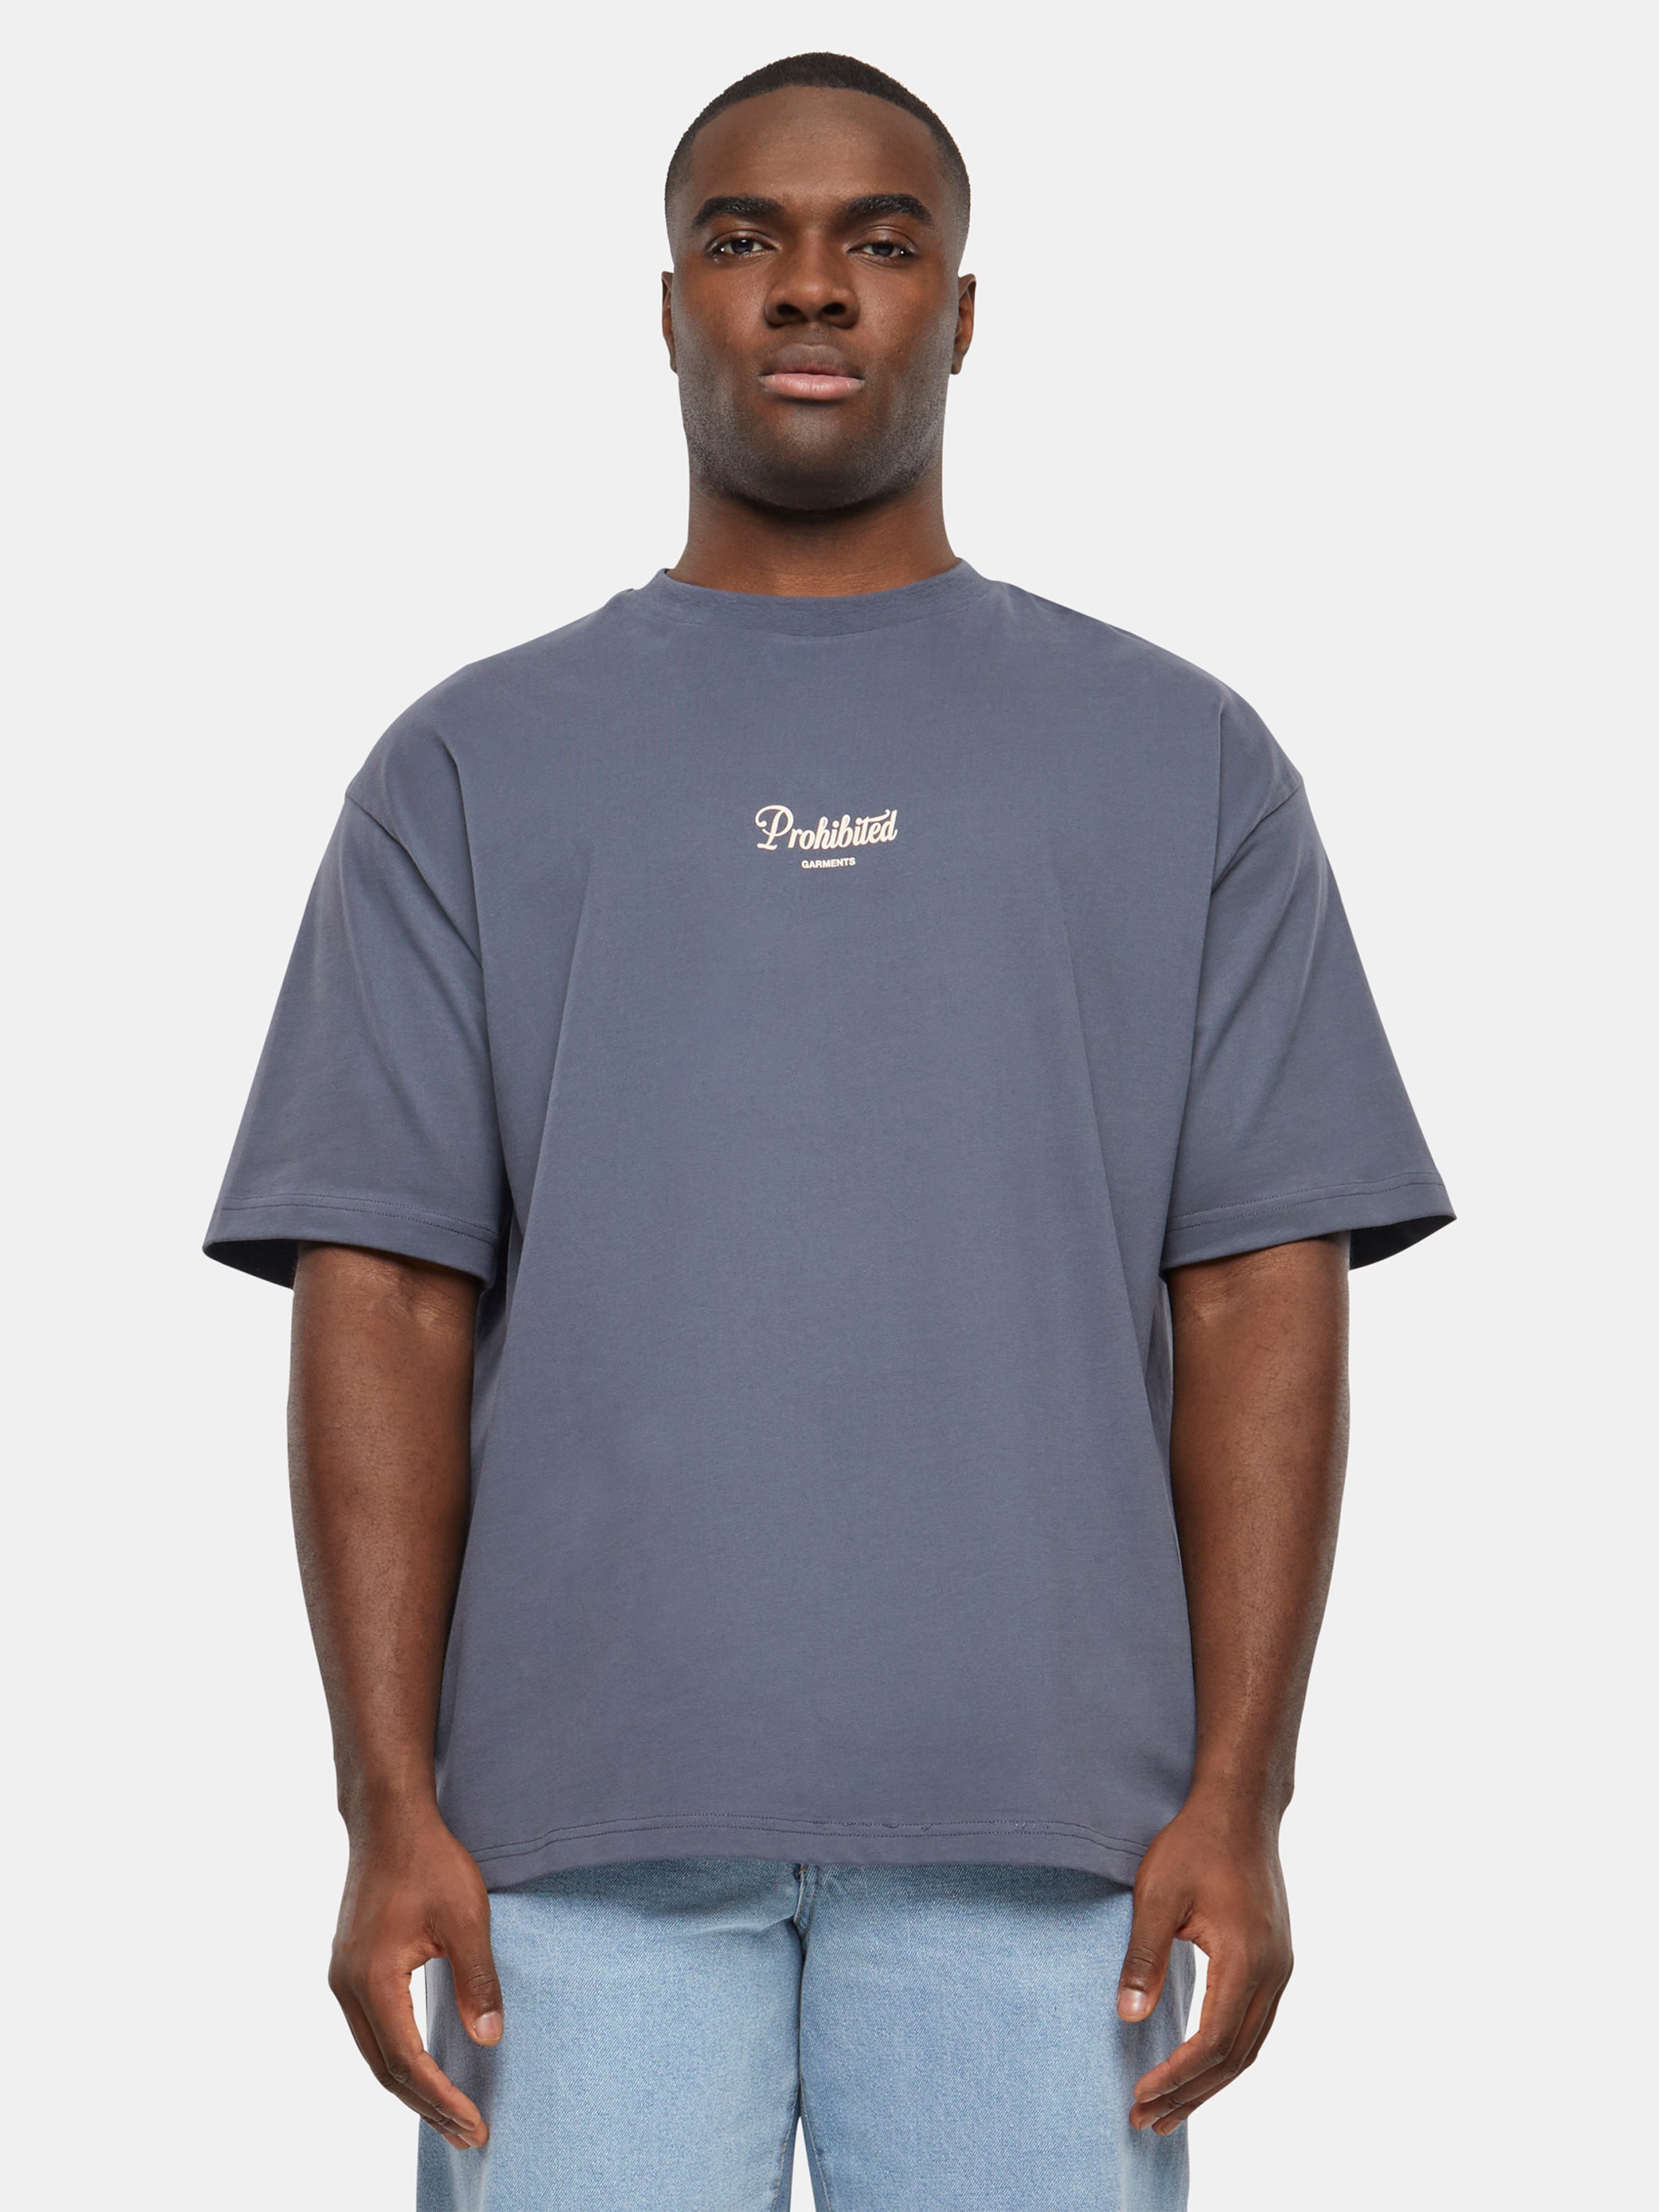 Prohibited PB Garment T Shirts Männer,Unisex op kleur grijs, Maat M